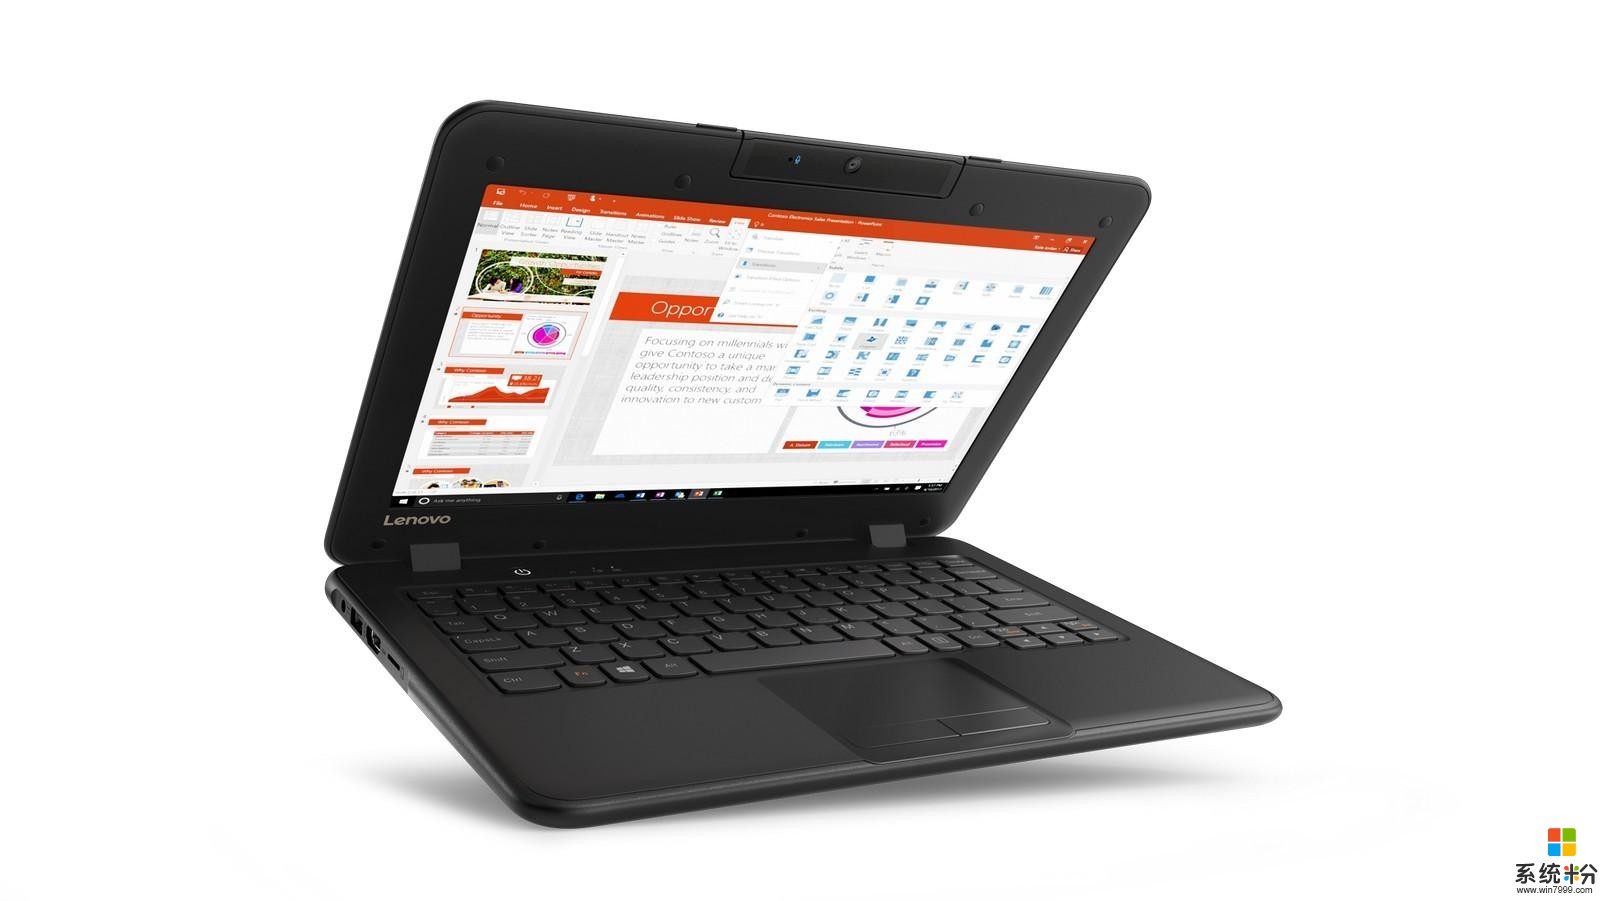 微软想通过廉价 Windows 10 笔记本电脑在教育领域挑战 Chromebook(2)